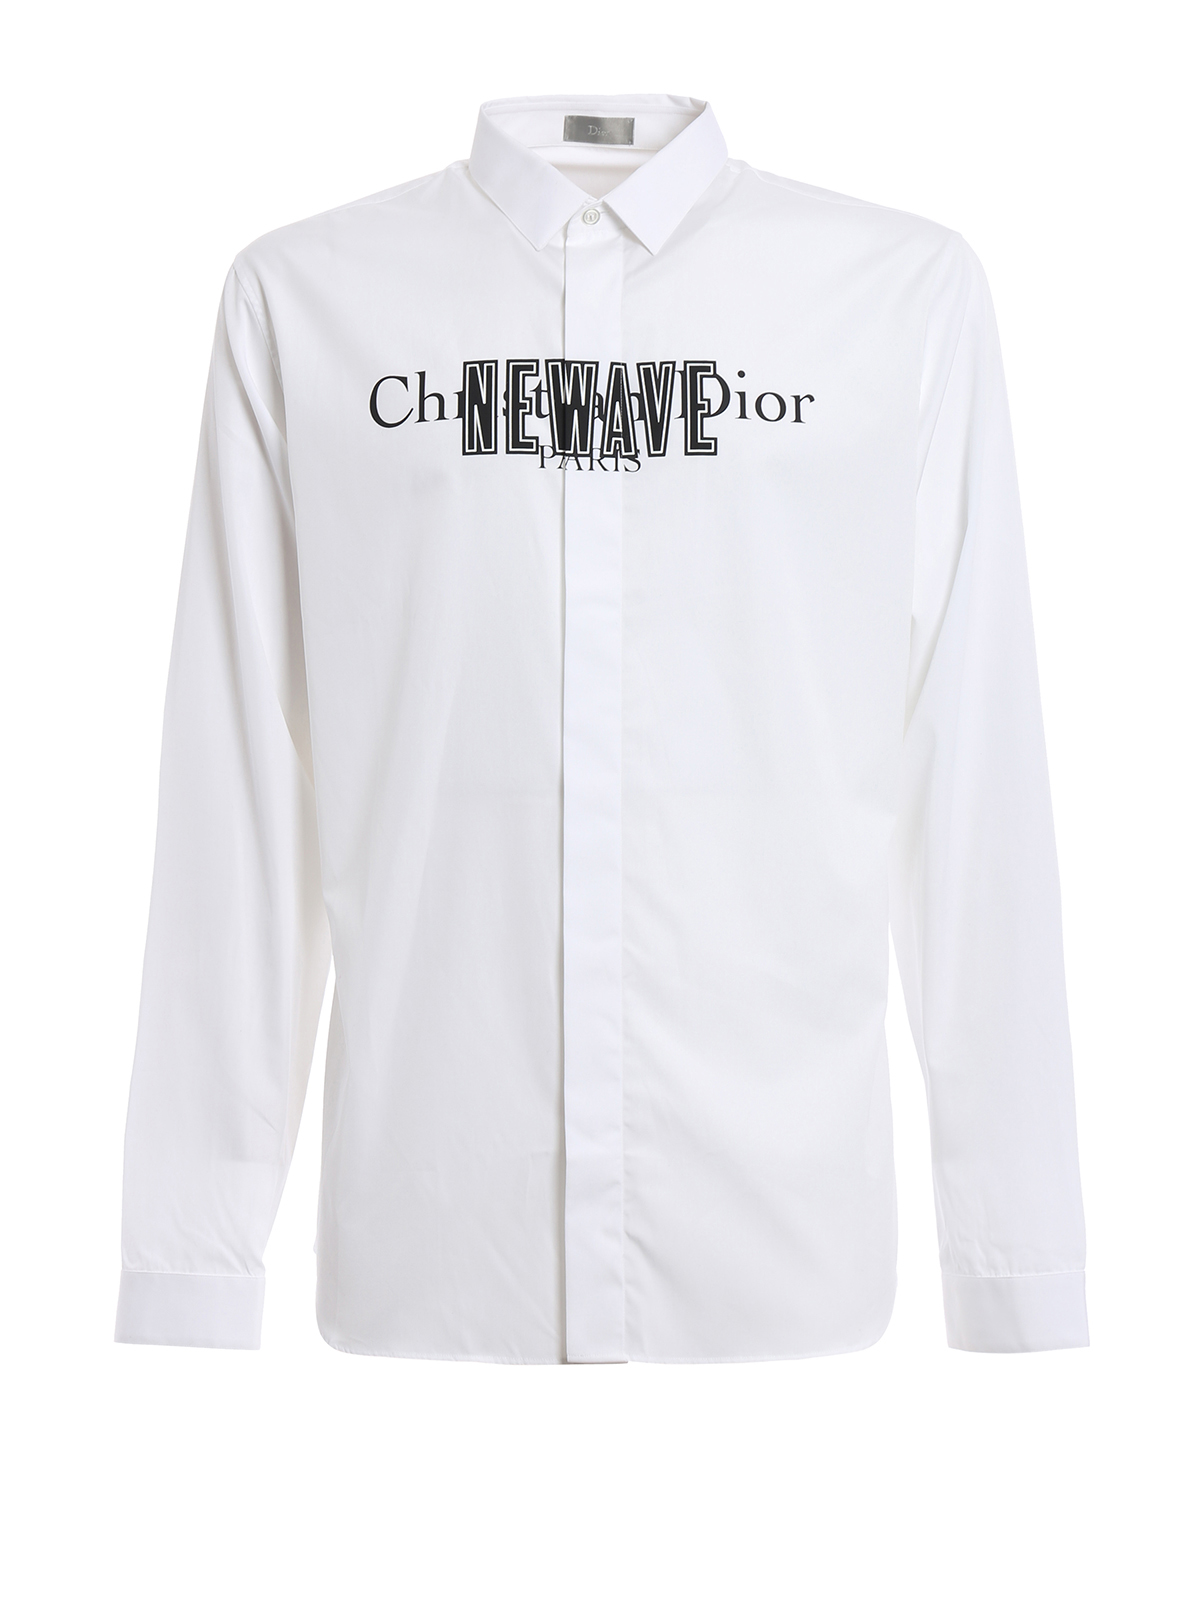 Shirts Dior - Christian Dior Paris Newave shirt - 433C529I7880089